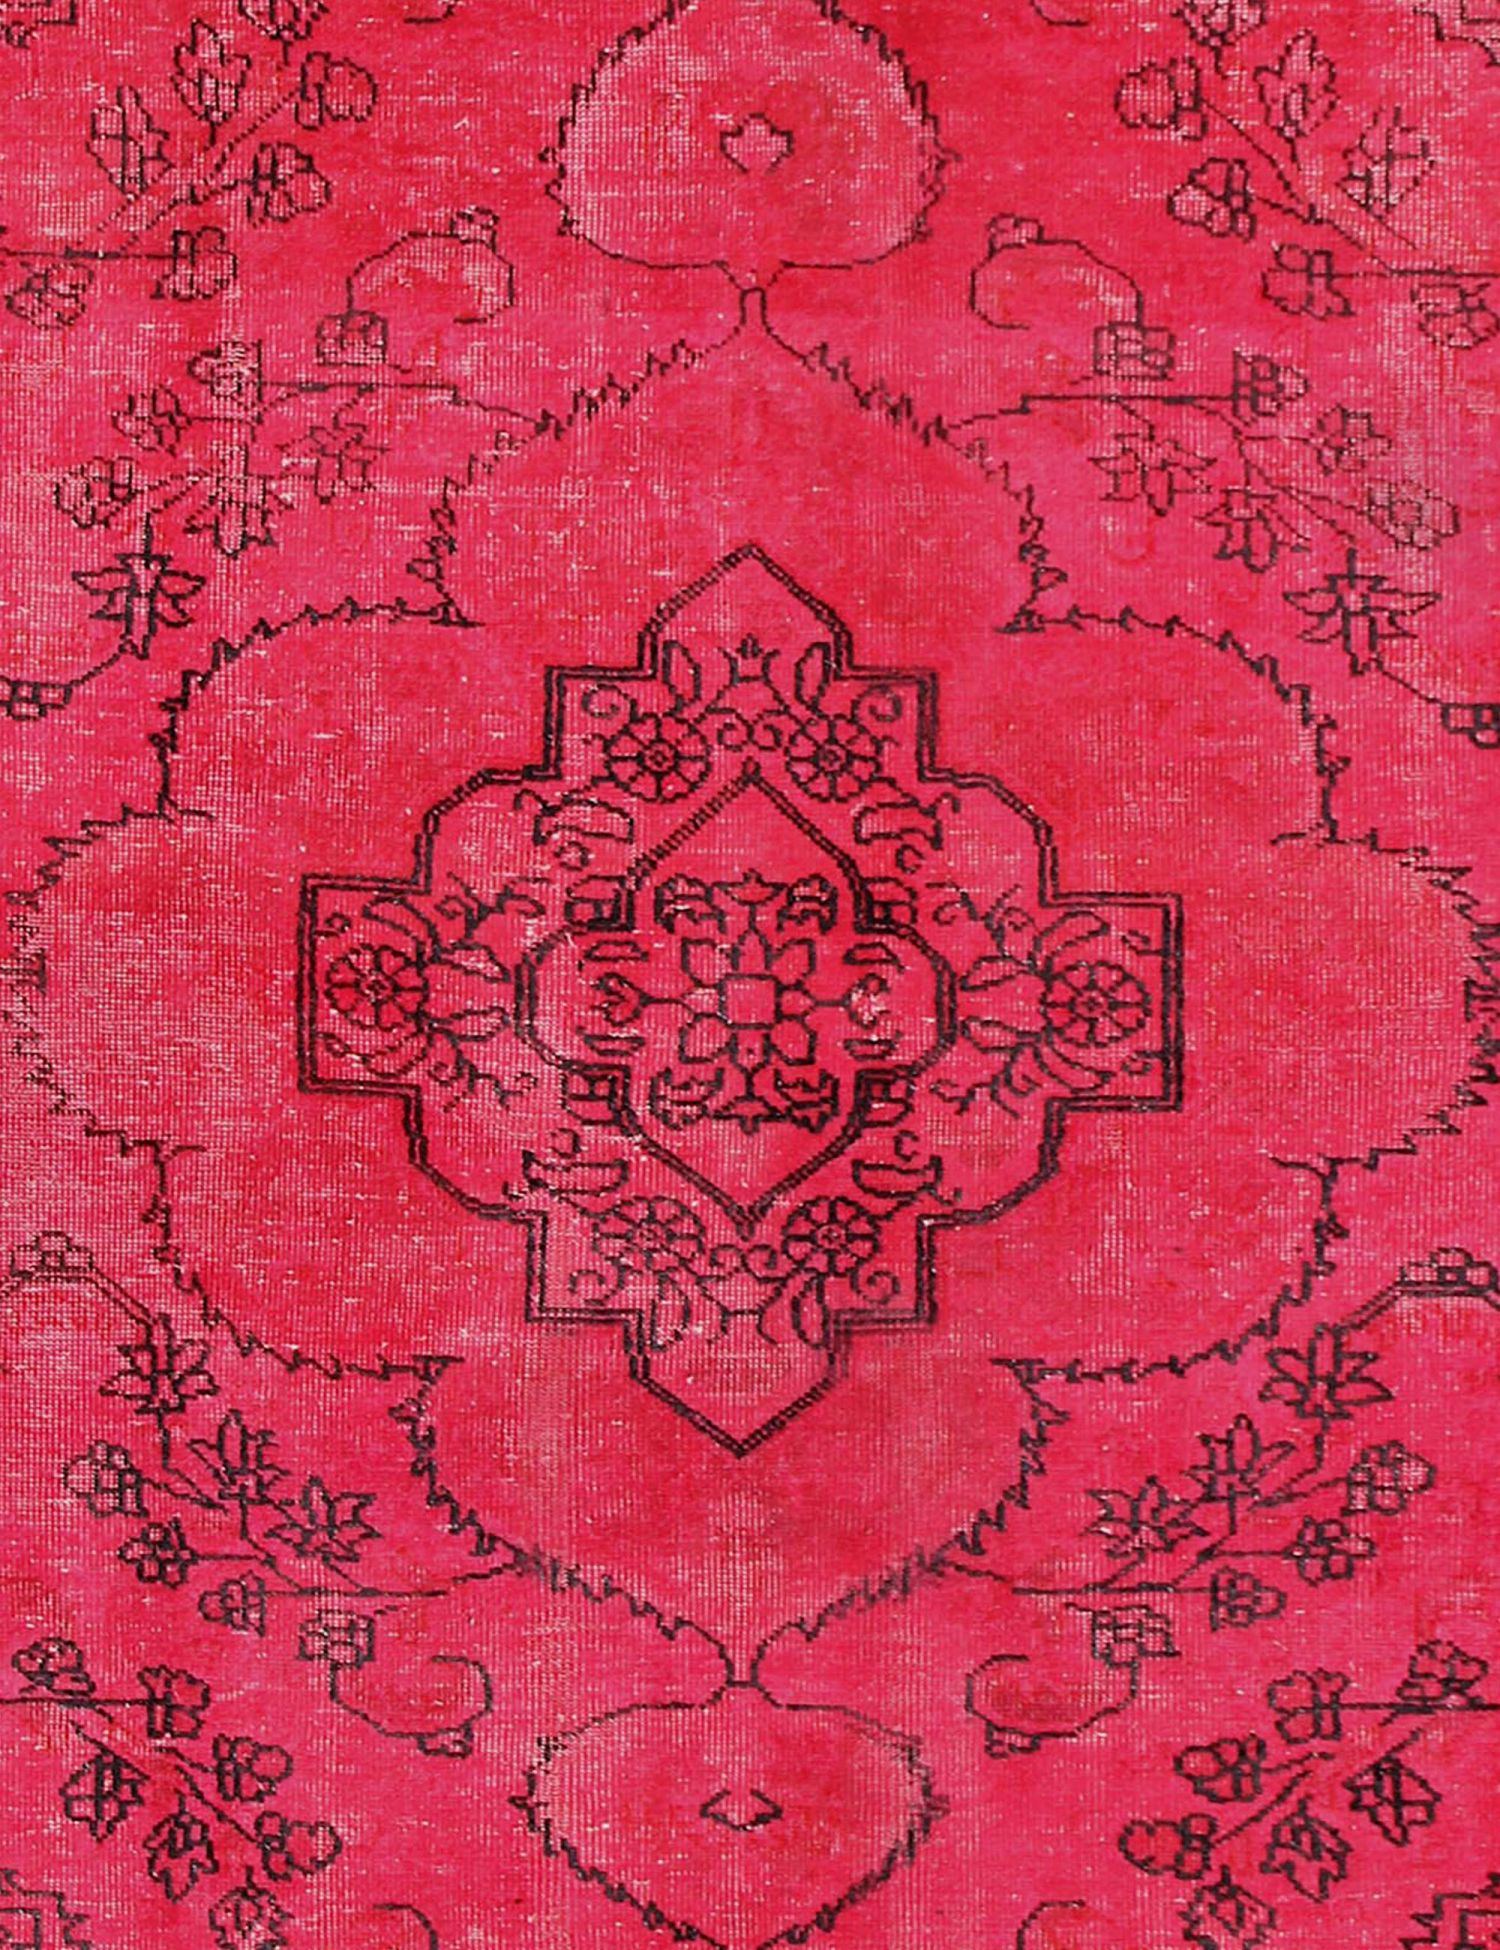 Persischer vintage teppich  rot <br/>250 x 164 cm